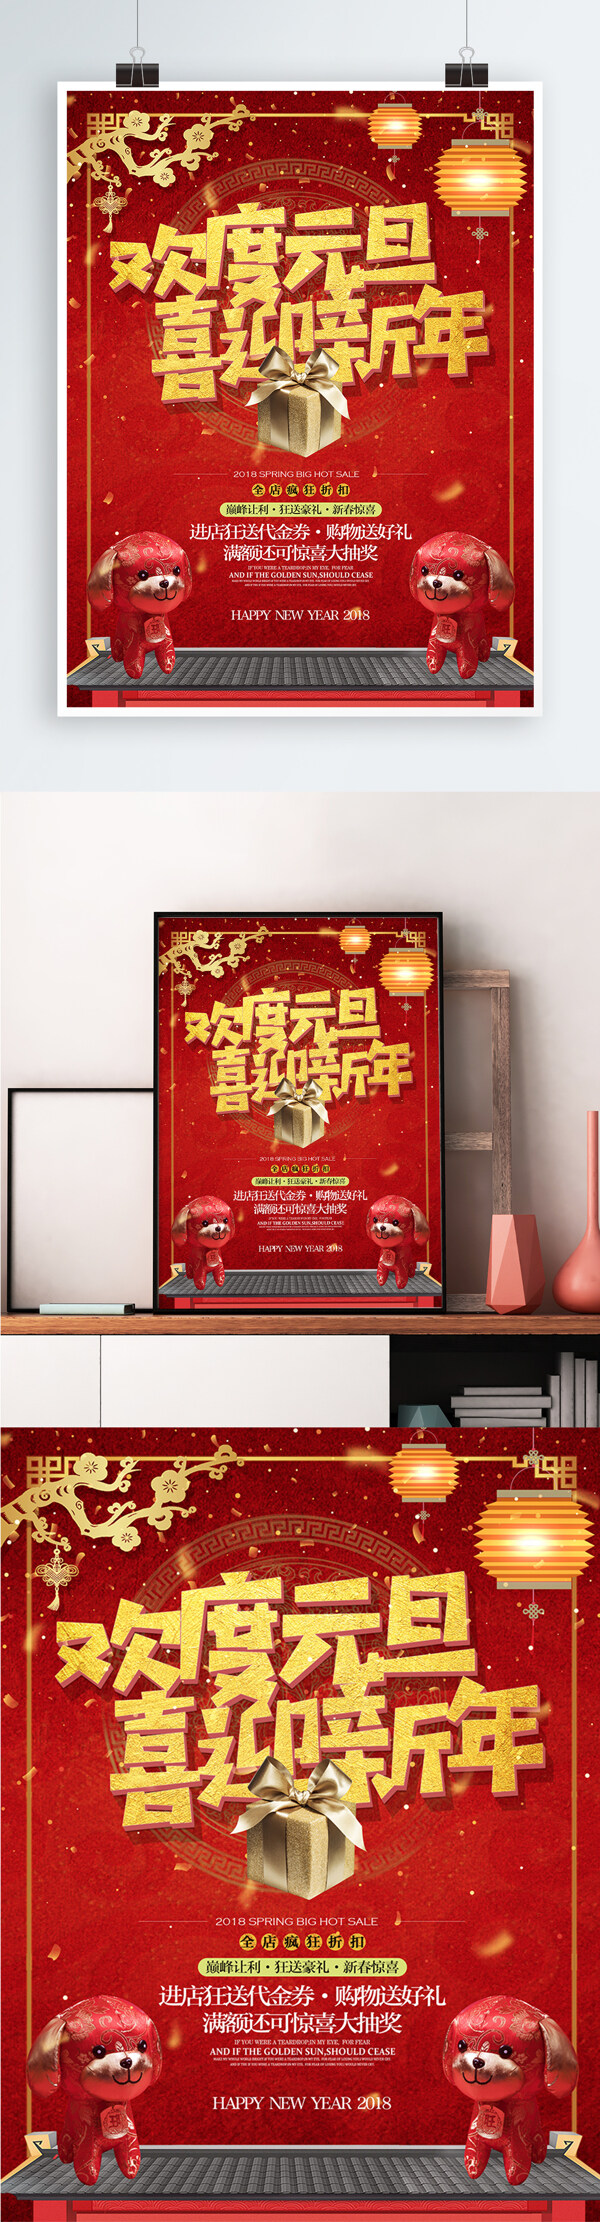 中国风喜庆欢度元旦喜迎新年宣传促销海报